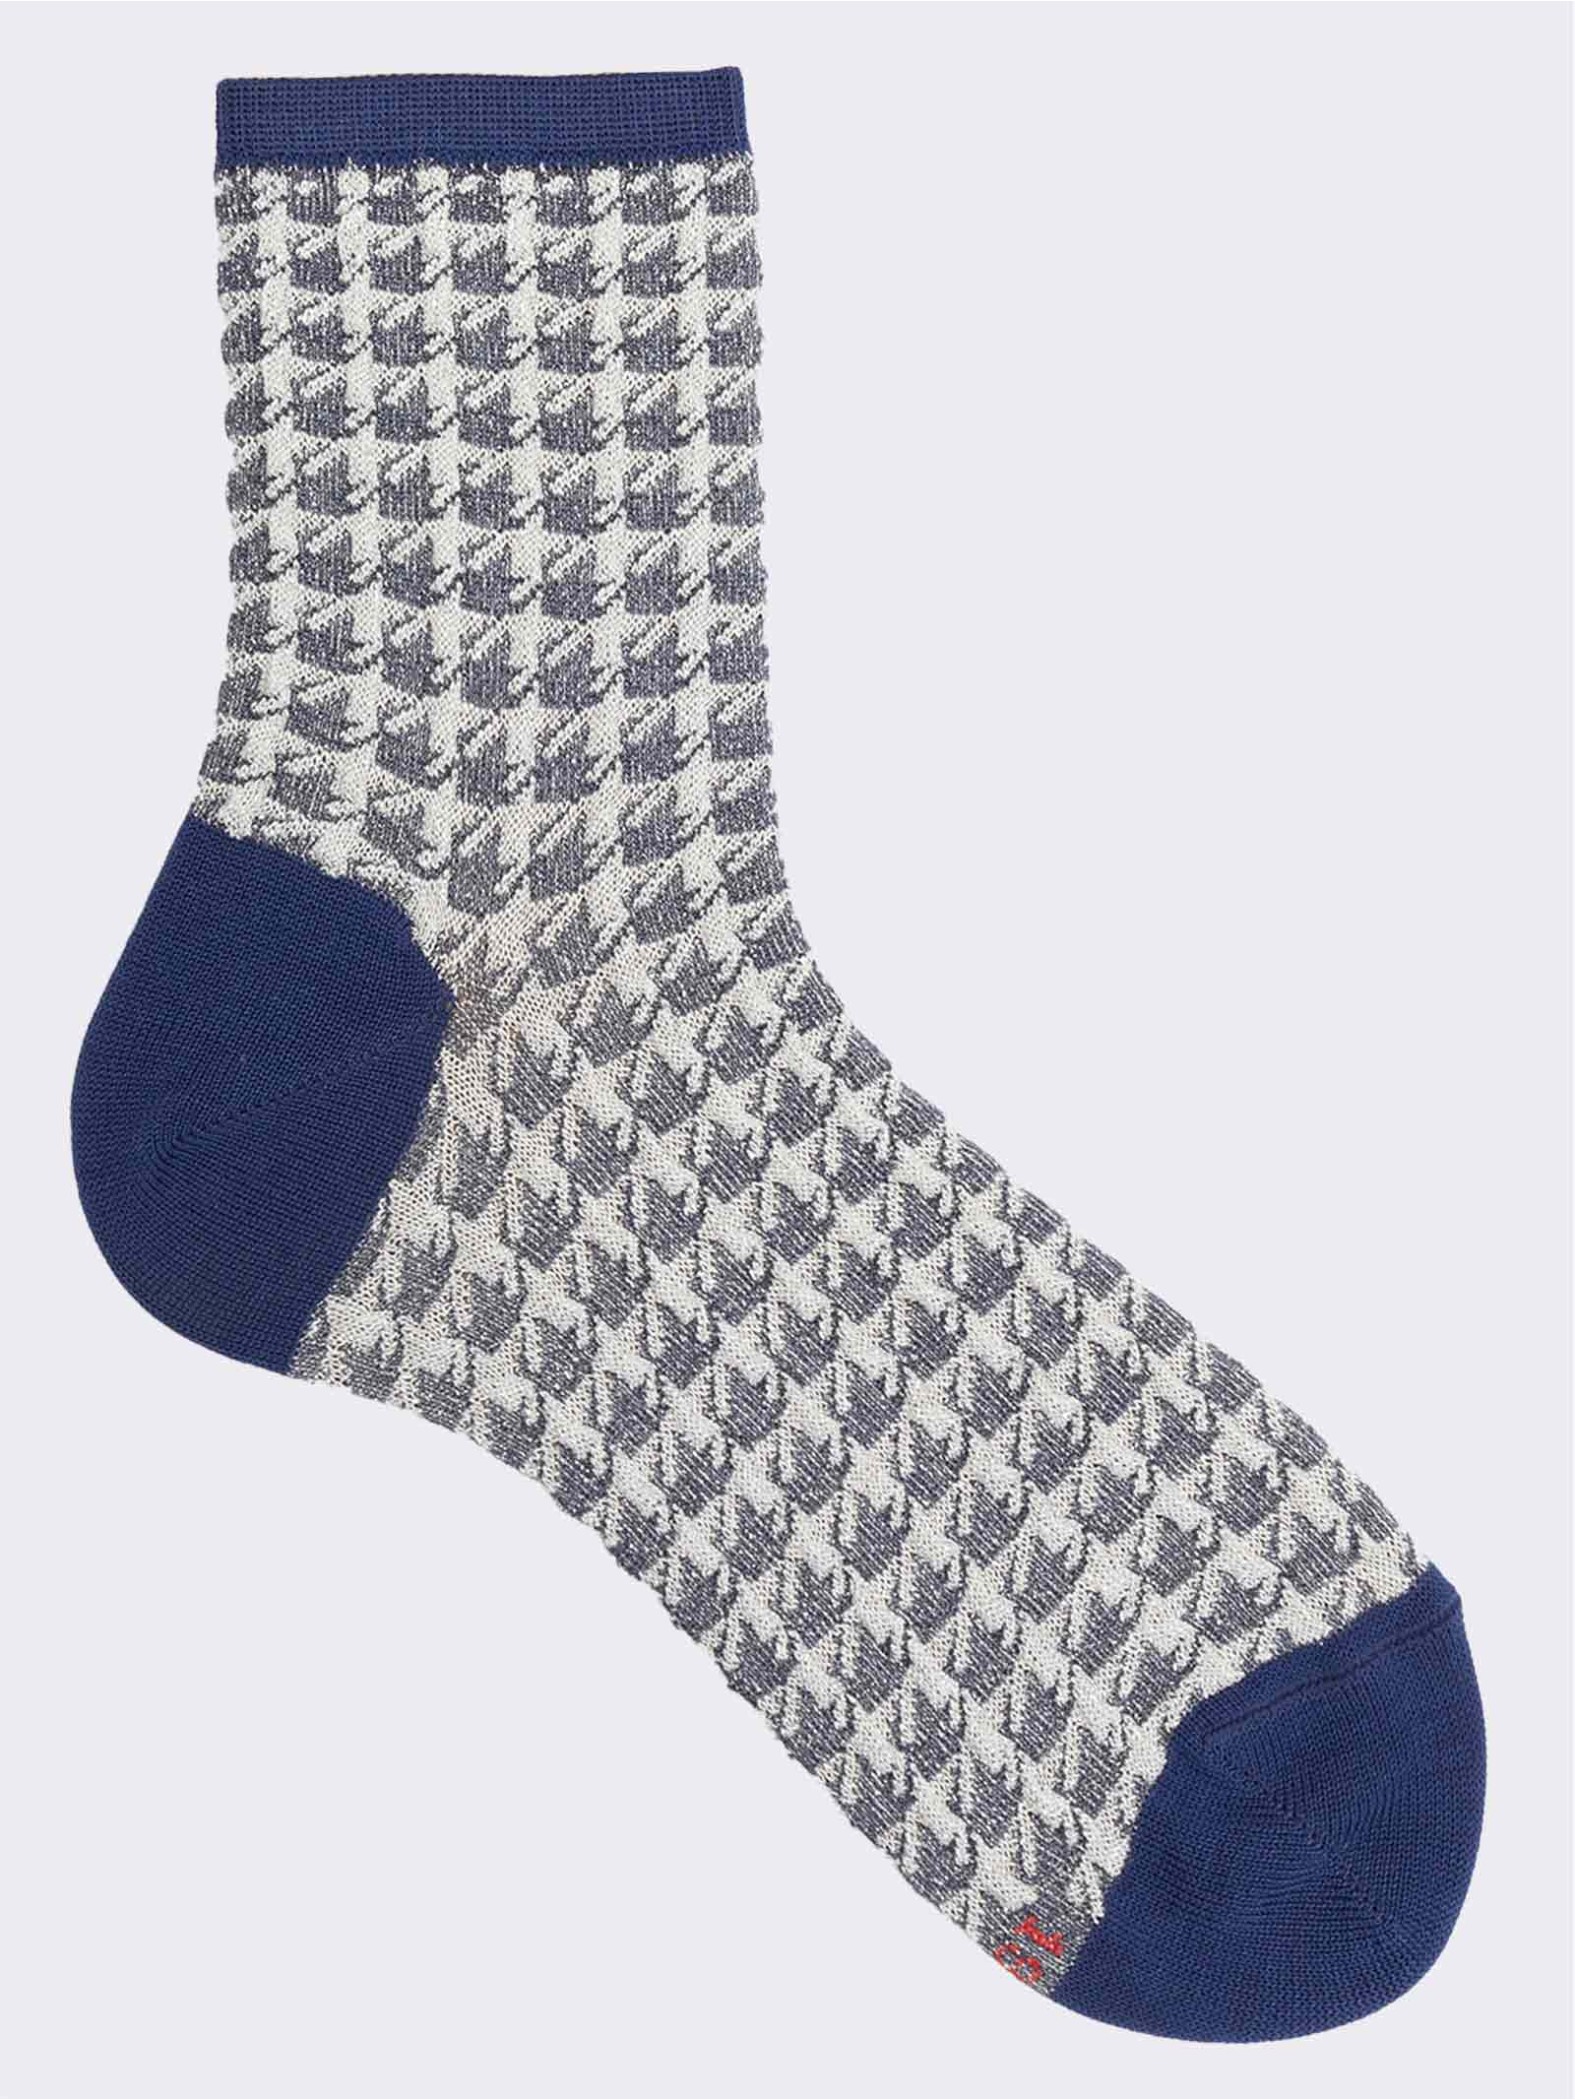 Pied de Poule kurze Socken mit Lurex-Muster